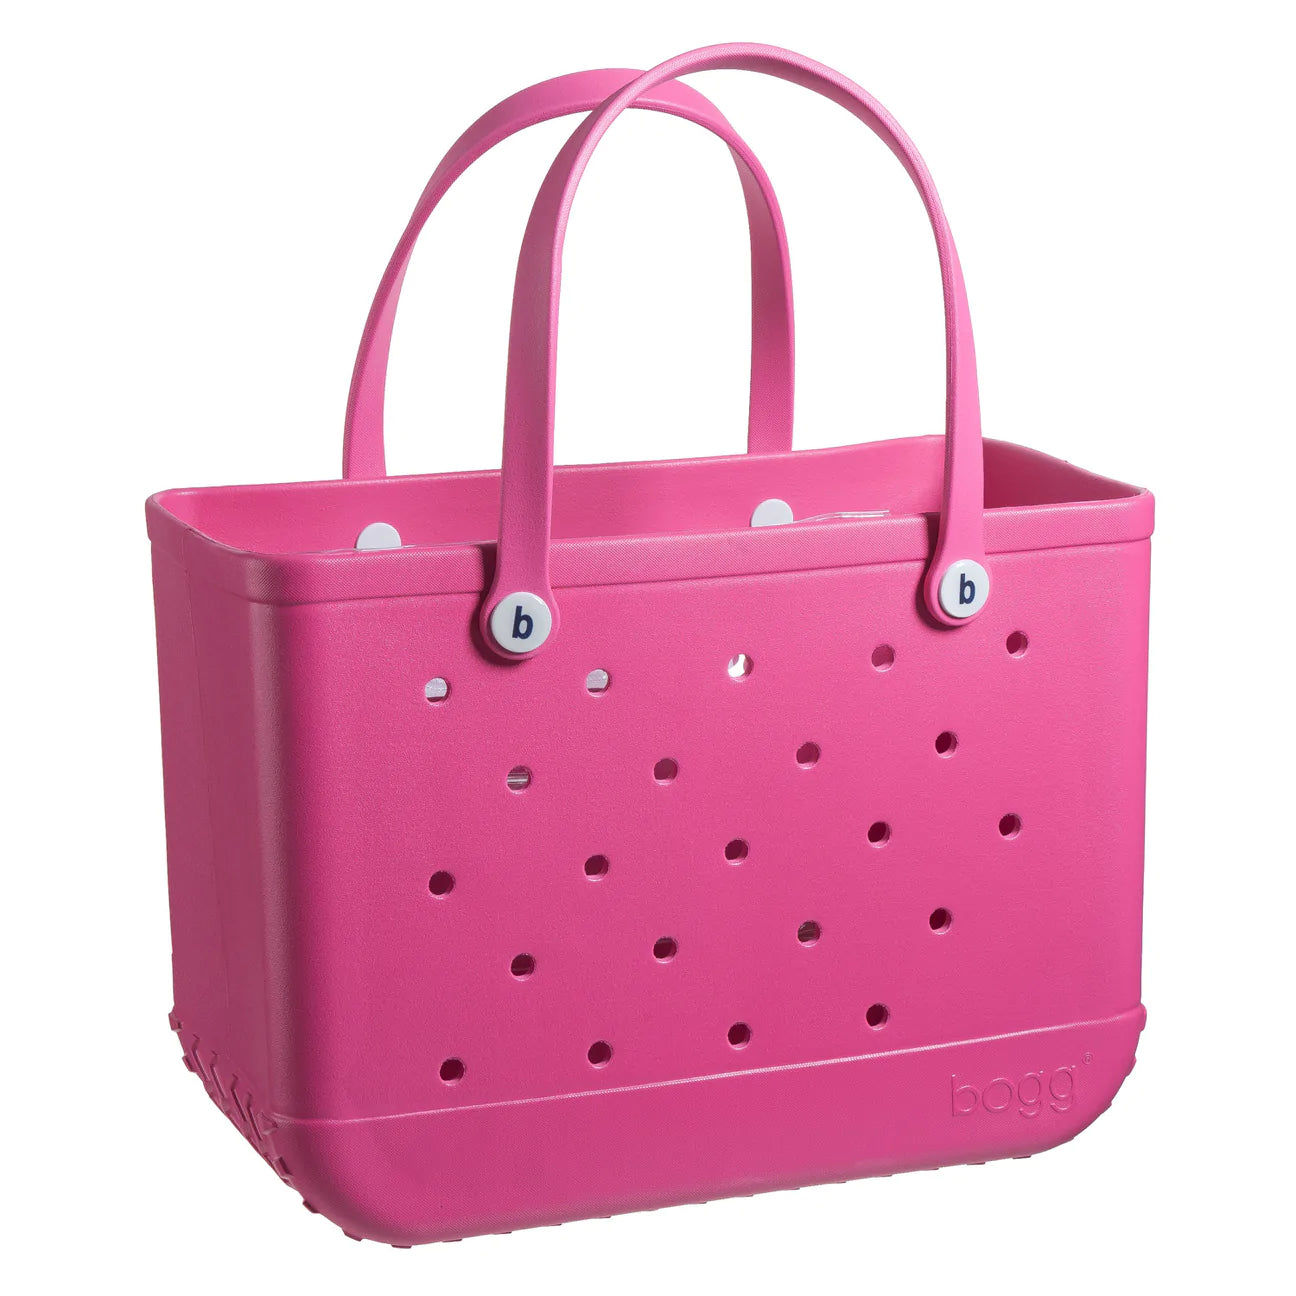 Original Bogg® Bag | Haute Pink